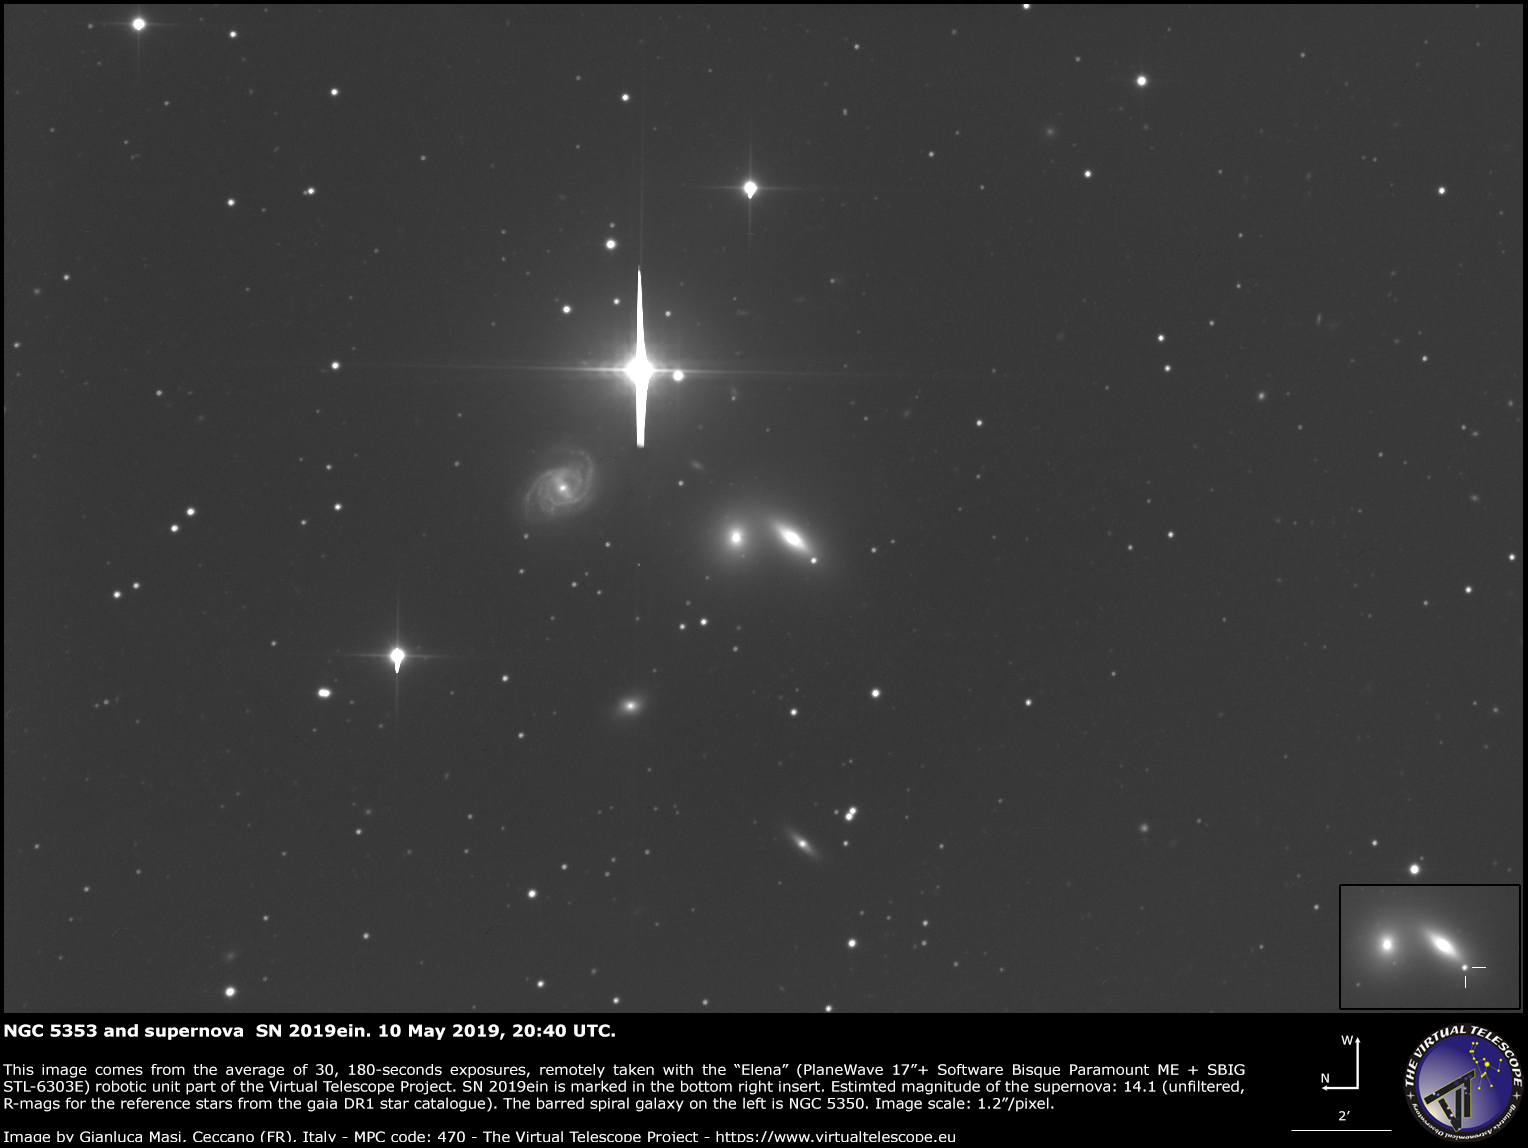 Supernova SN 2019ein in NGC 5353. 10 May 2019.